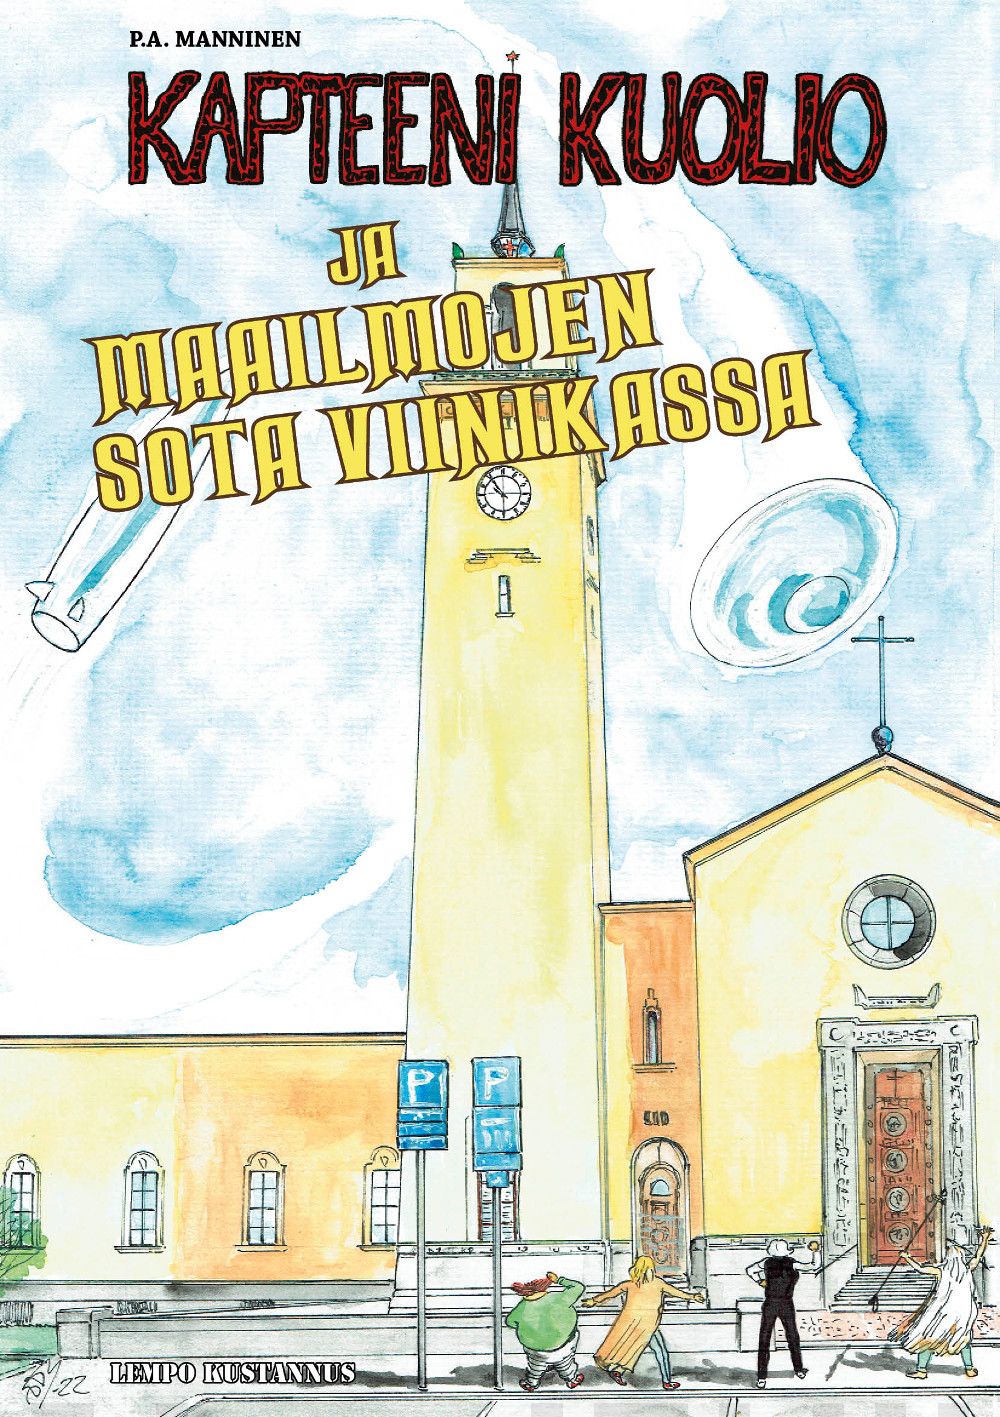 Kapteeni Kuolio ja maailmojen sota Viinikassa sarjakuva-albumin kansi